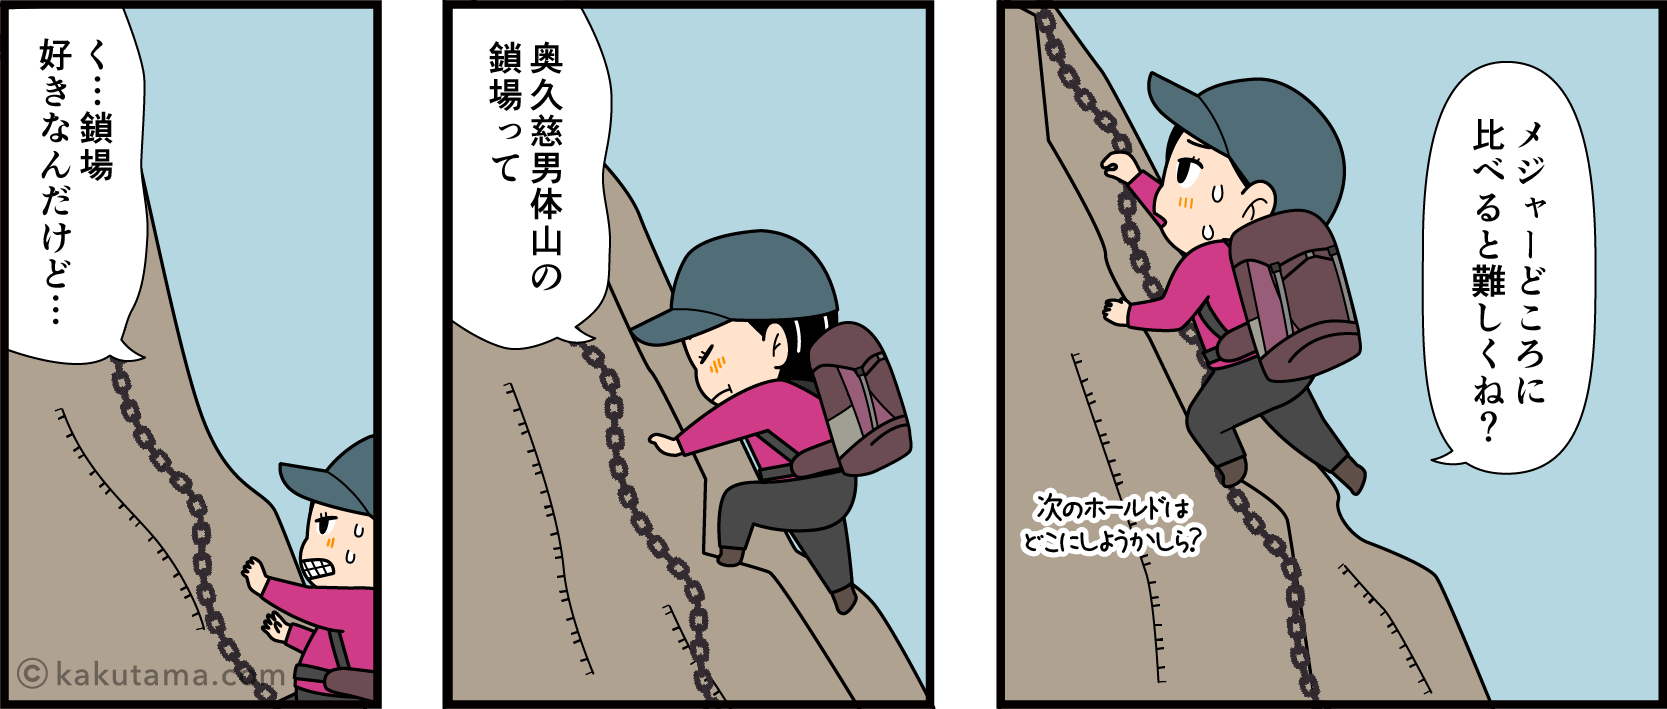 鎖場の登り方に悩む登山者の漫画